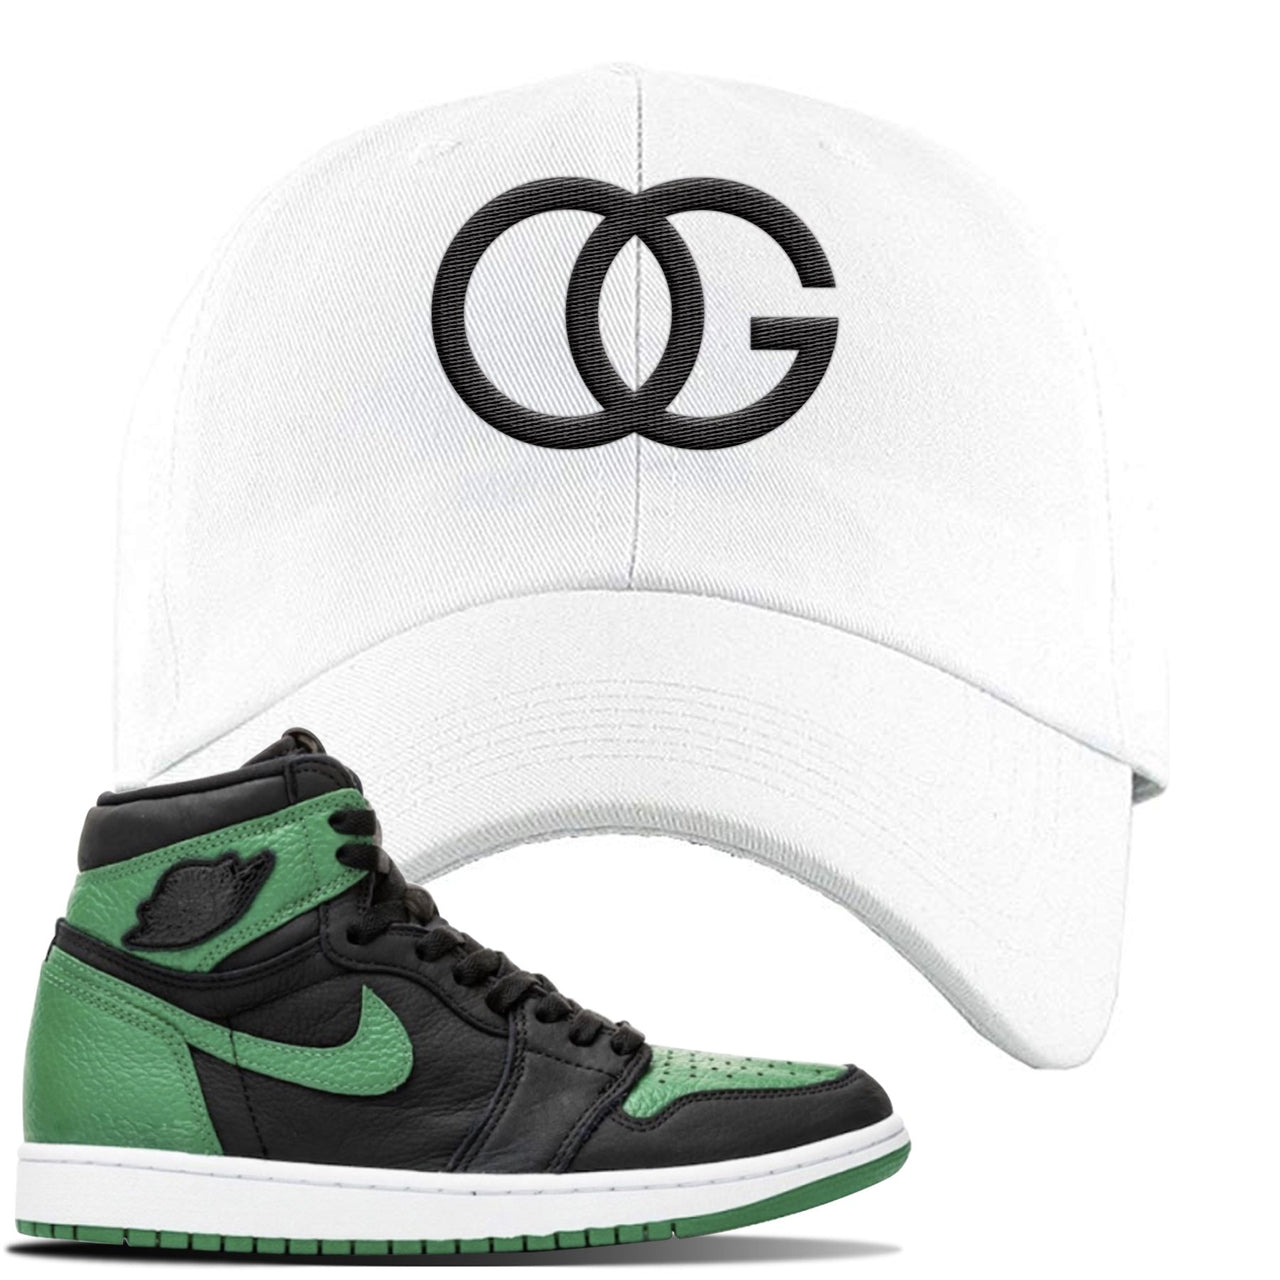 Jordan 1 Retro High OG Pine Green Gym Sneaker White Dad Hat | Hat to match Air Jordan 1 Retro High OG Pine Green Gym Shoes | OG